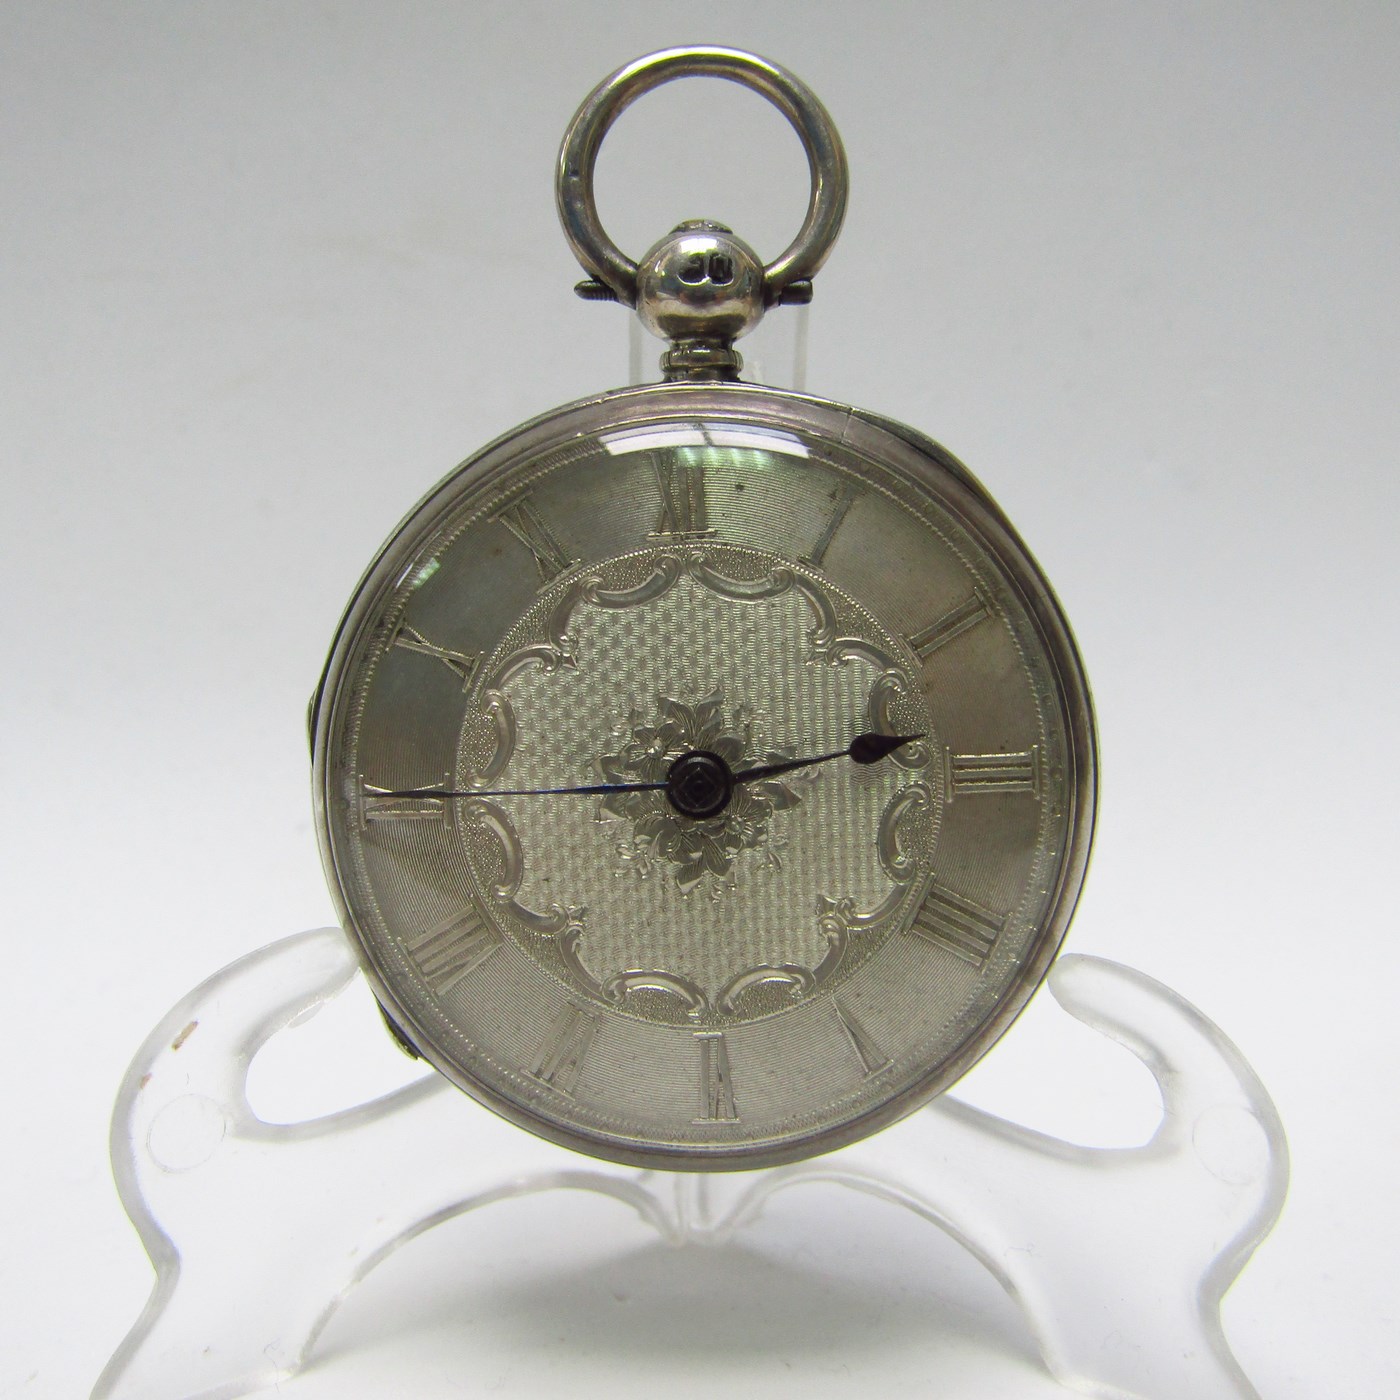 Reloj inglés de Bolsillo-colgar, lepine, unisex. Londres, año 1869.